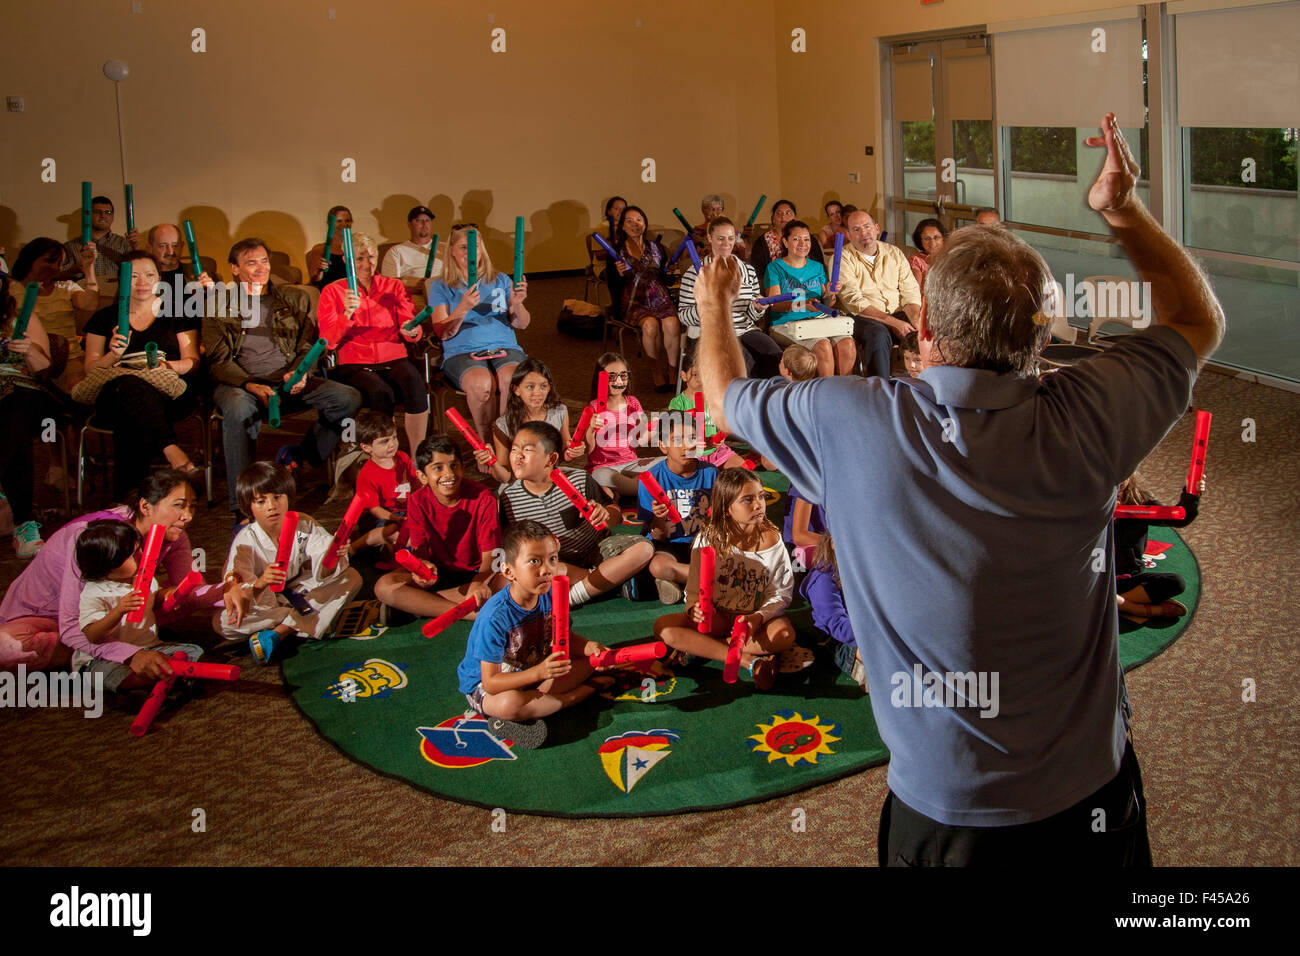 Eine multirassische Kinder Rhythm Band spielt tuned Percussion Röhren Boomwhackers am Laguna Niguel, CA, Stadtbibliothek Mehrzweckraum aufgerufen. Beachten Sie die Eltern im Hintergrund. Hinweis Erwachsenen Marktführer im Vordergrund Stockfoto